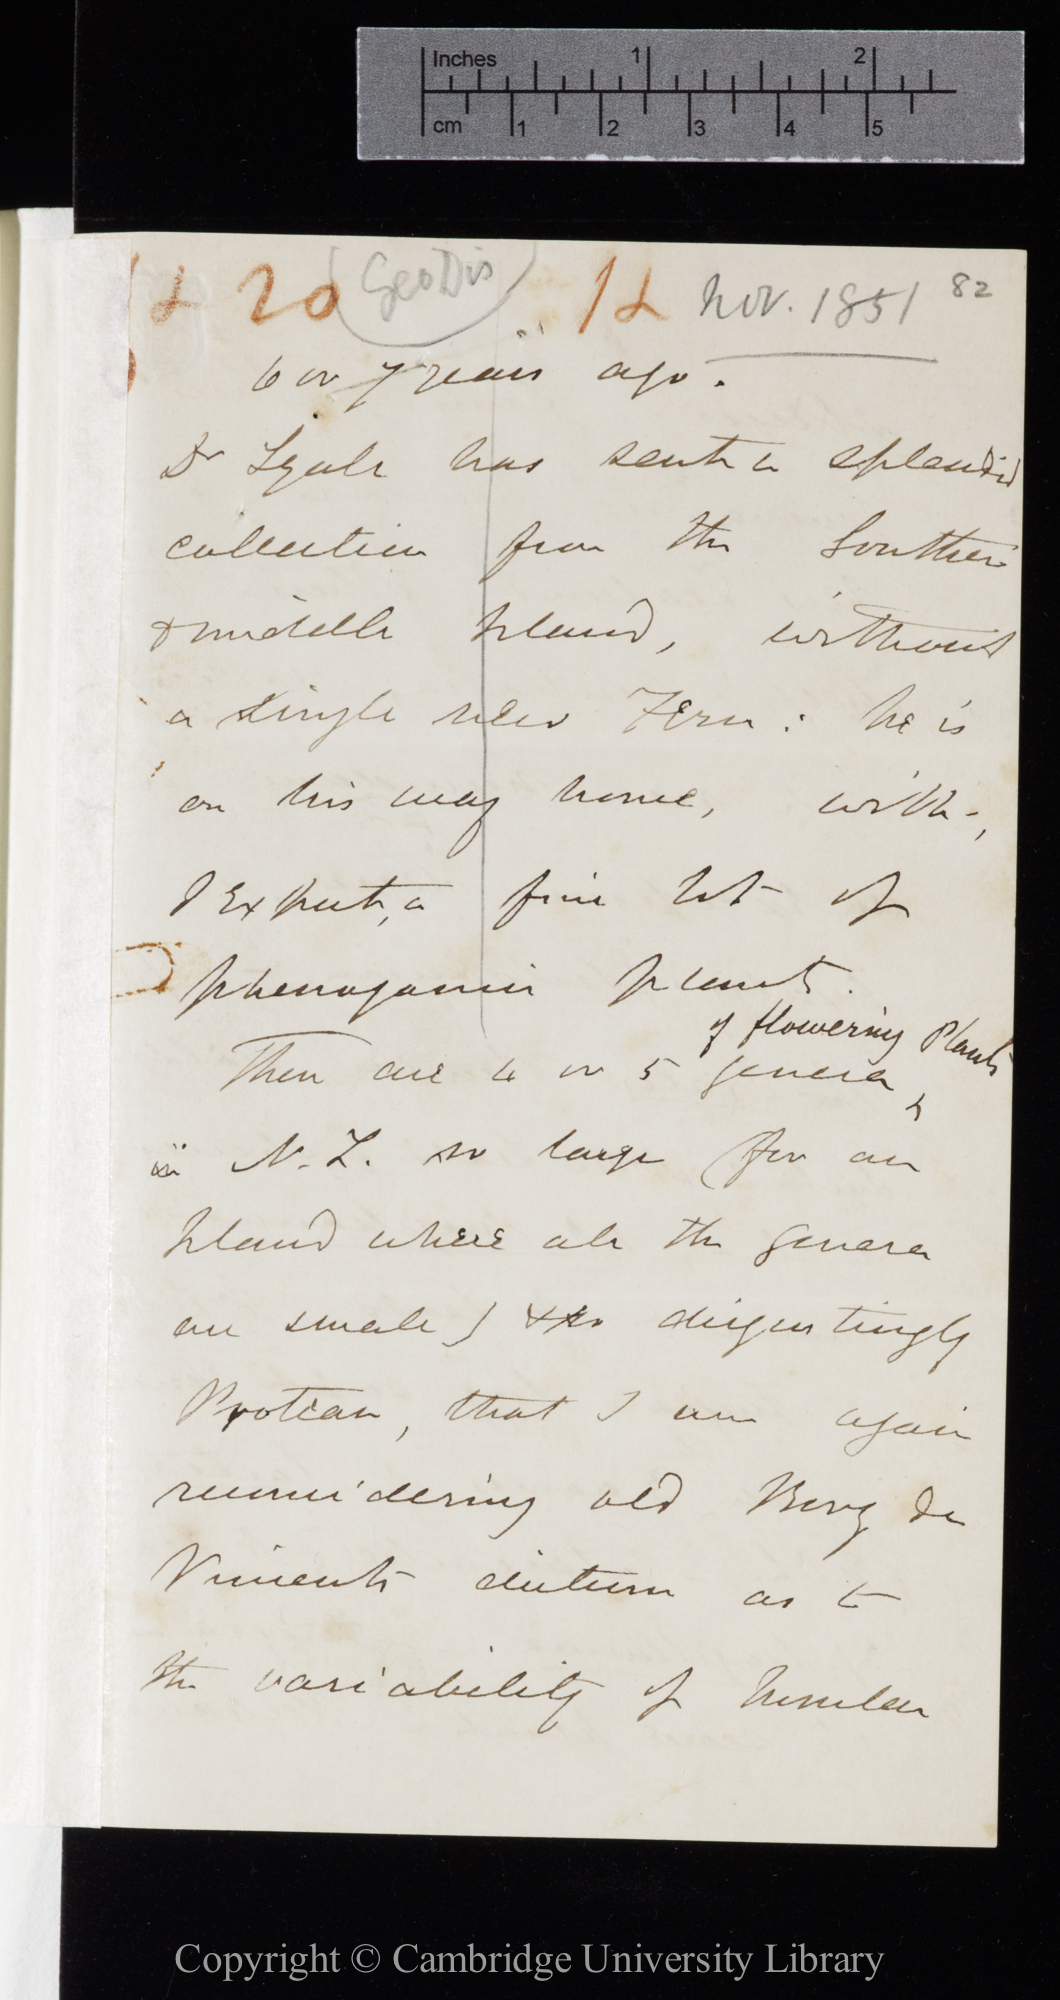 Letter from J. D. Hooker to C. R. Darwin   [November 1851]